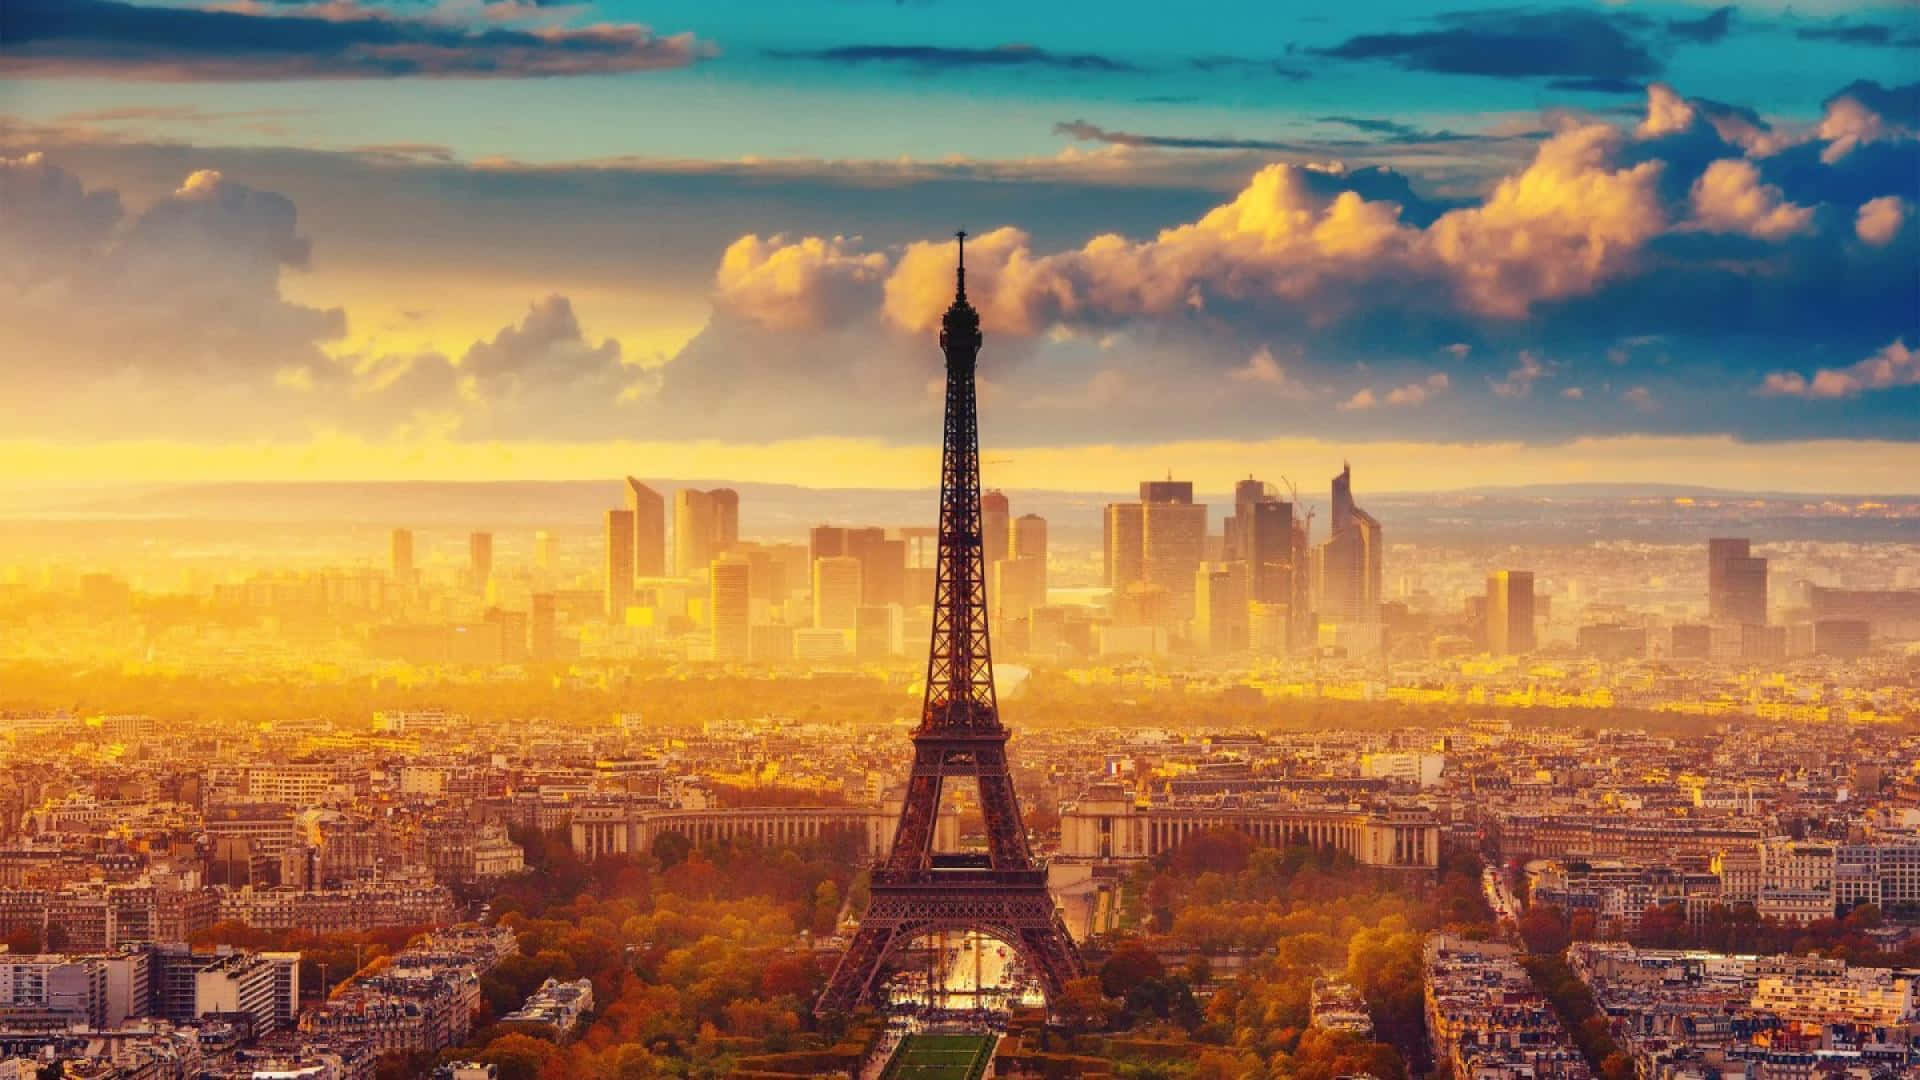 Amundialmente Famosa Torre Eiffel Em Paris, França.